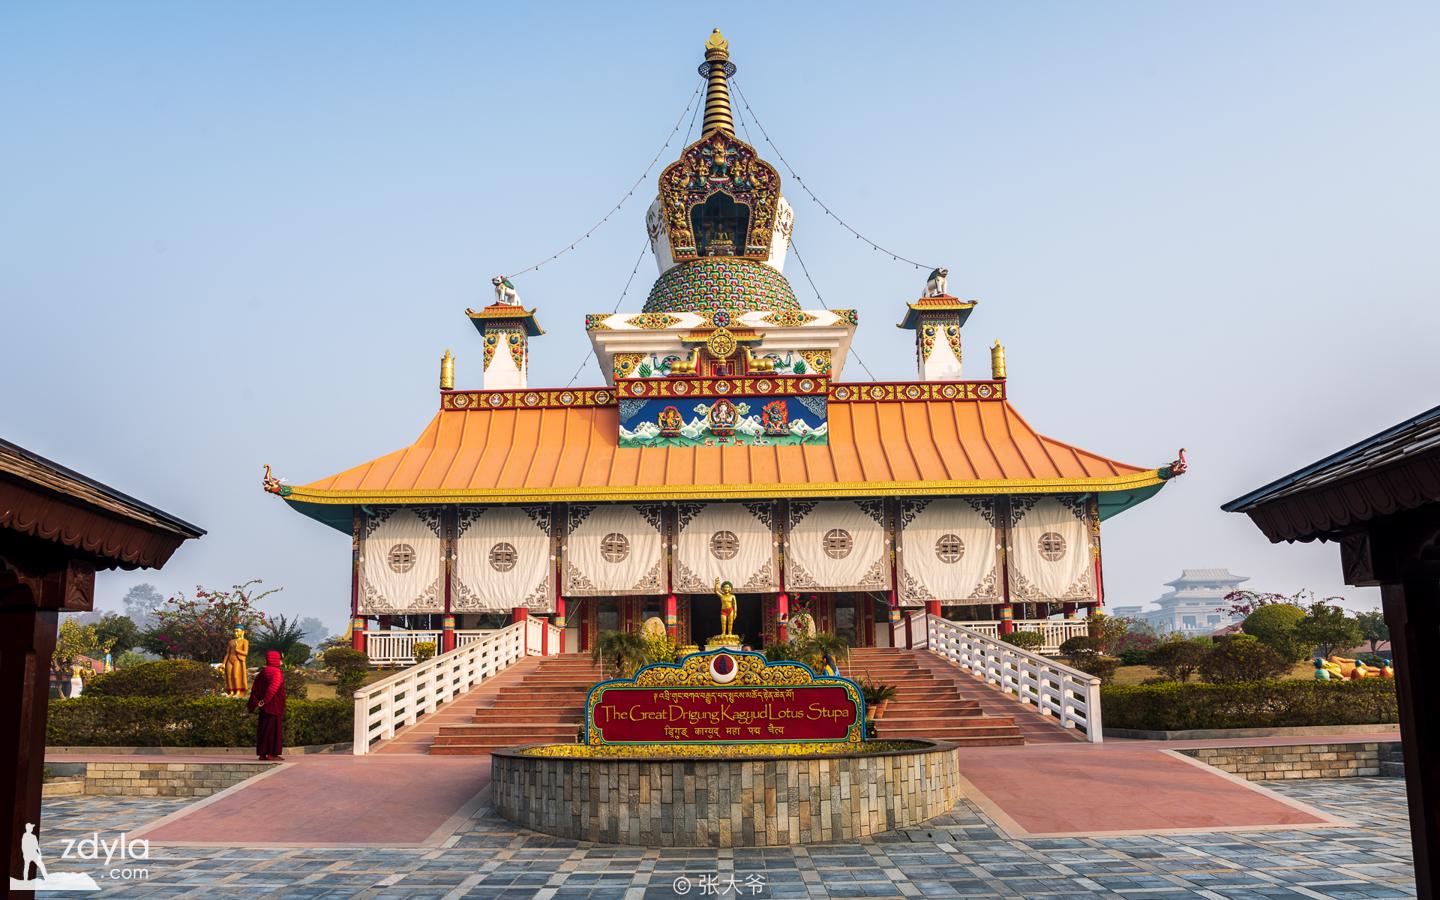 Birthplace of Buddha